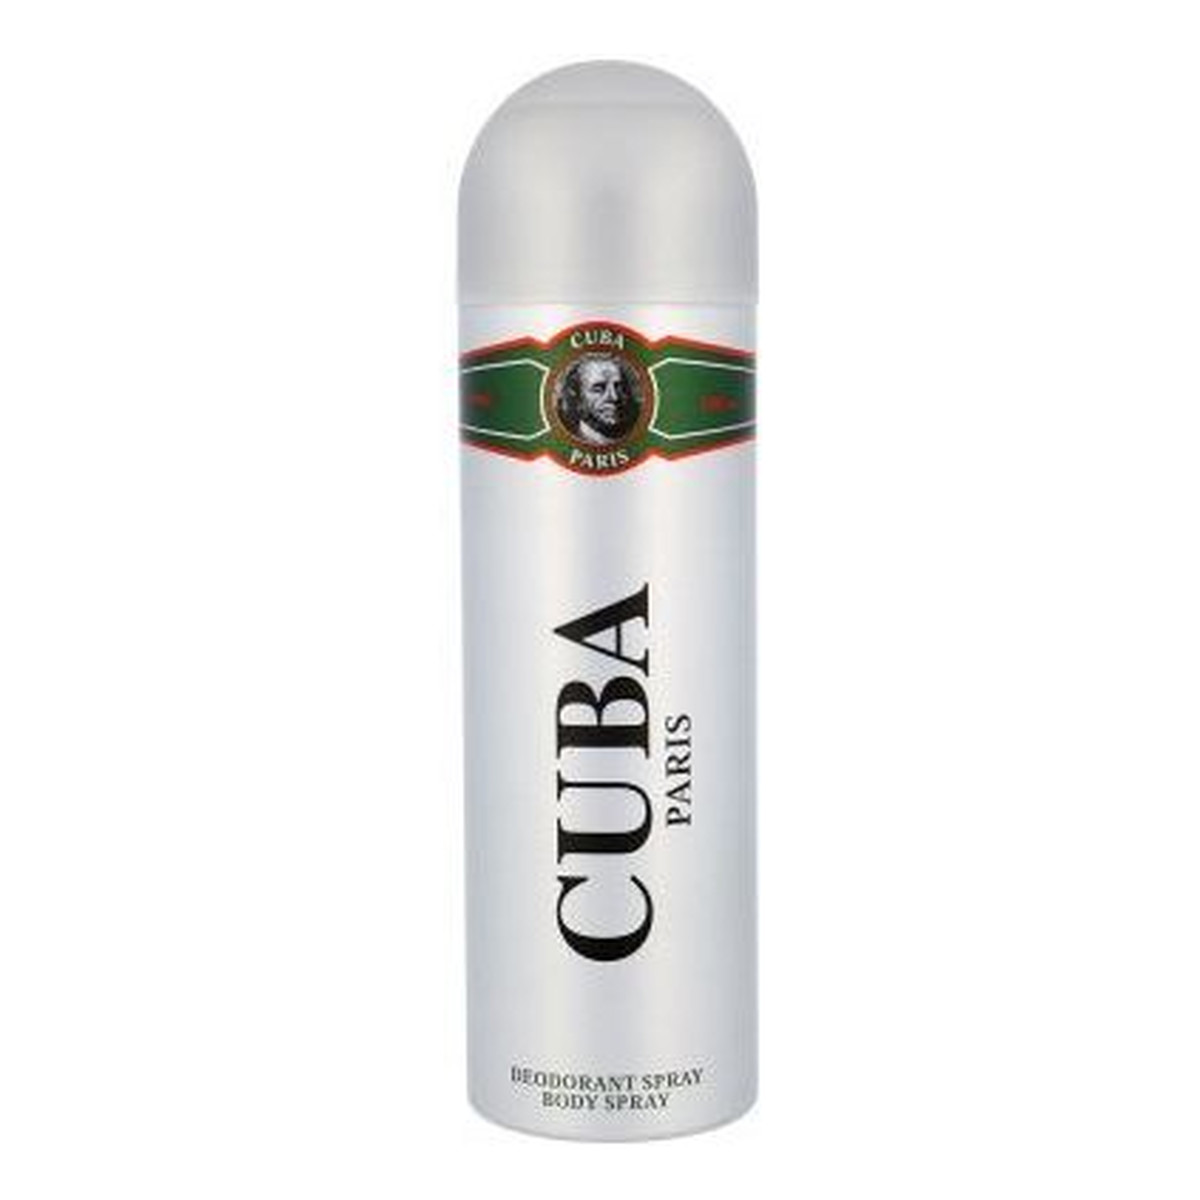 Cuba Green Dezodorant dla mężczyzn 200ml